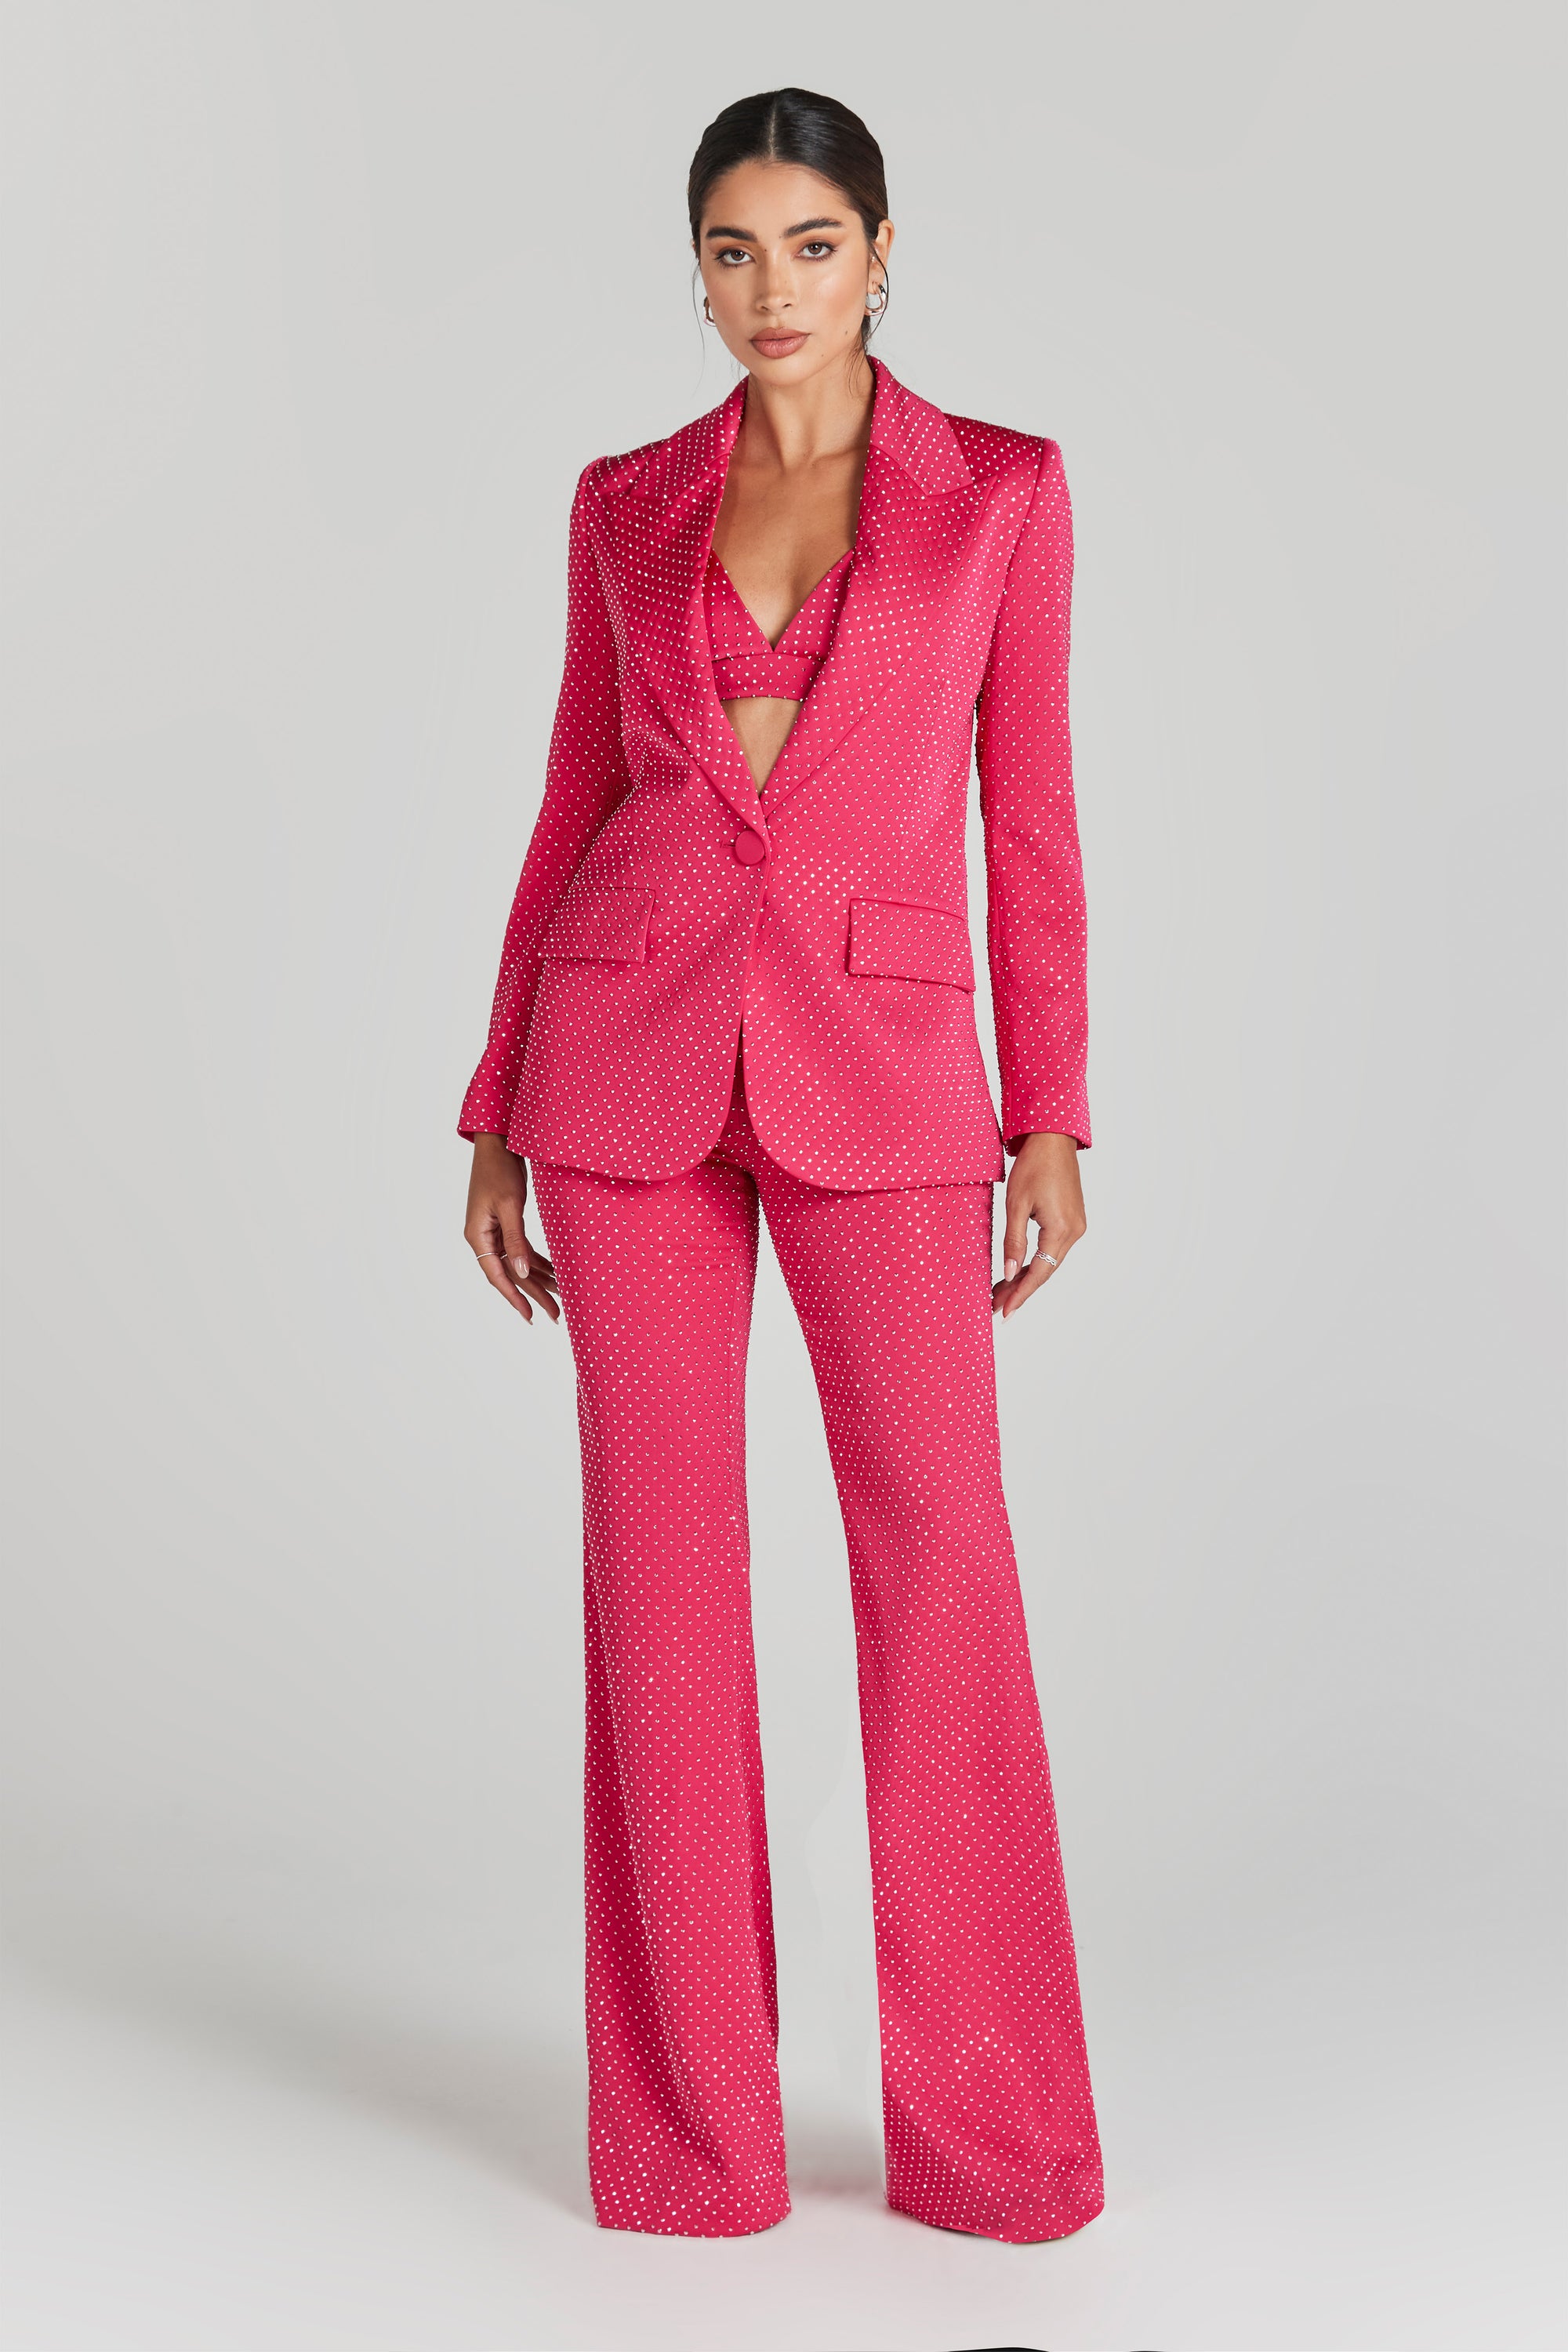 Hot Crystal Embellished Pink Blazer – IULOVER